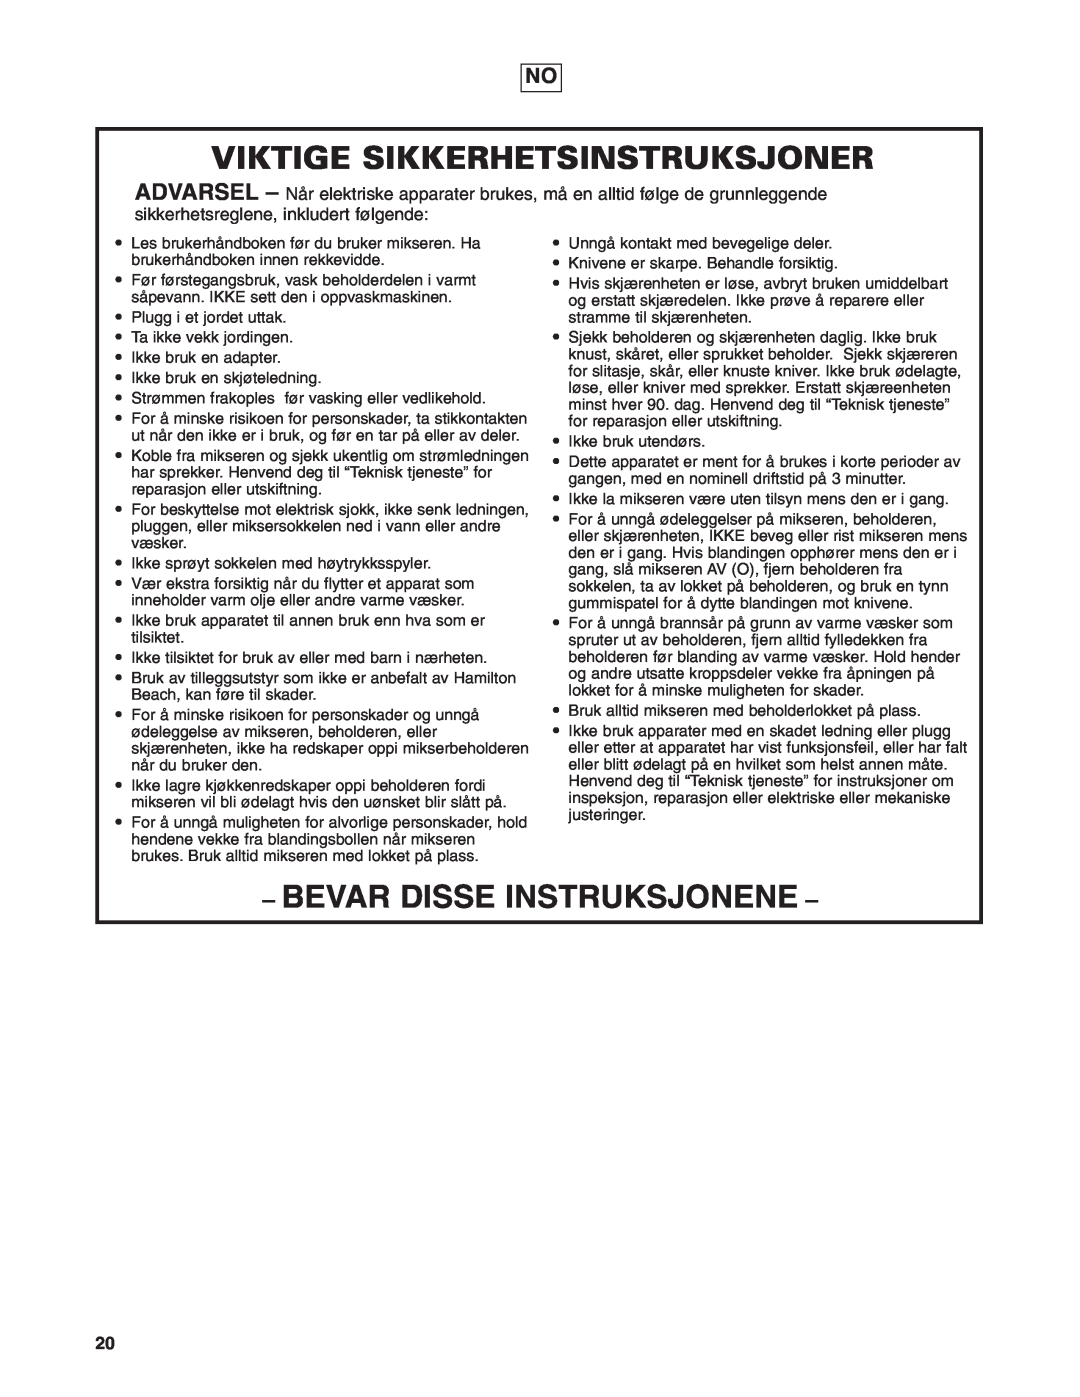 Hamilton Beach 908 Series operation manual Viktige Sikkerhetsinstruksjoner, Bevar Disse Instruksjonene 